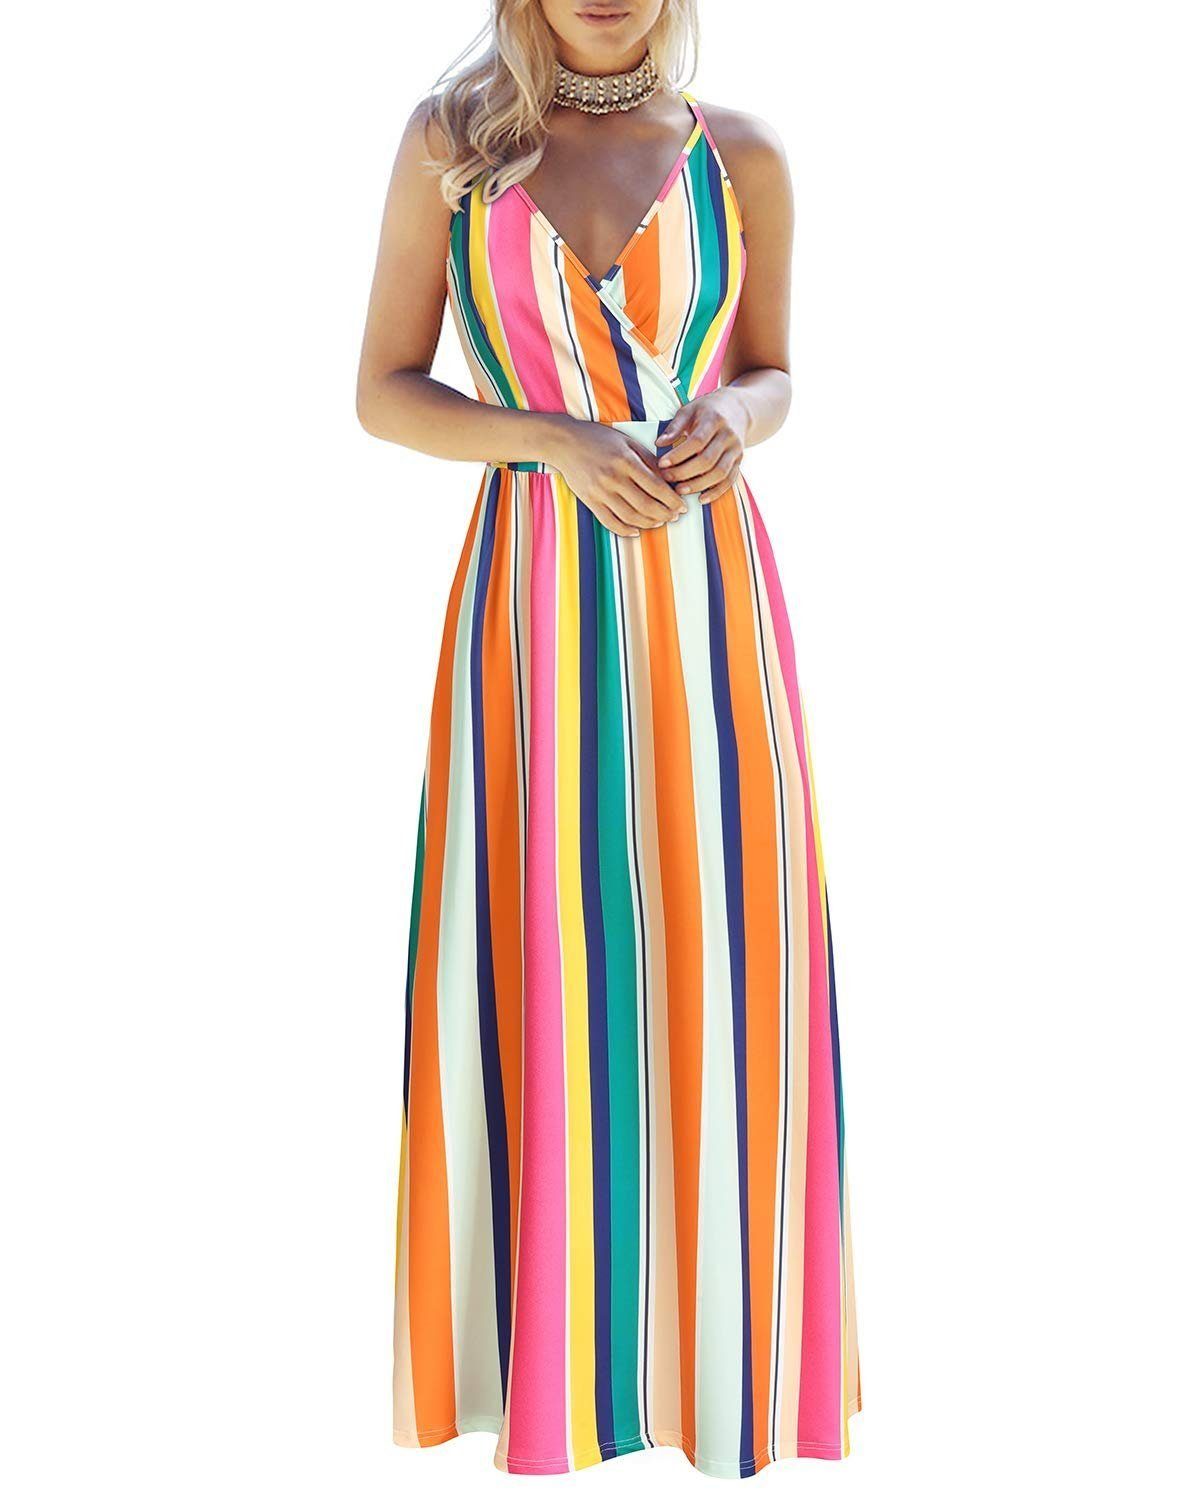 G4Free Sommerkleid OTGFOE442 Sommerkleid, lange Maxikleider für Damen, V-Ausschnitt, ärmellos, Strandkleid mit Taschen Modell-1